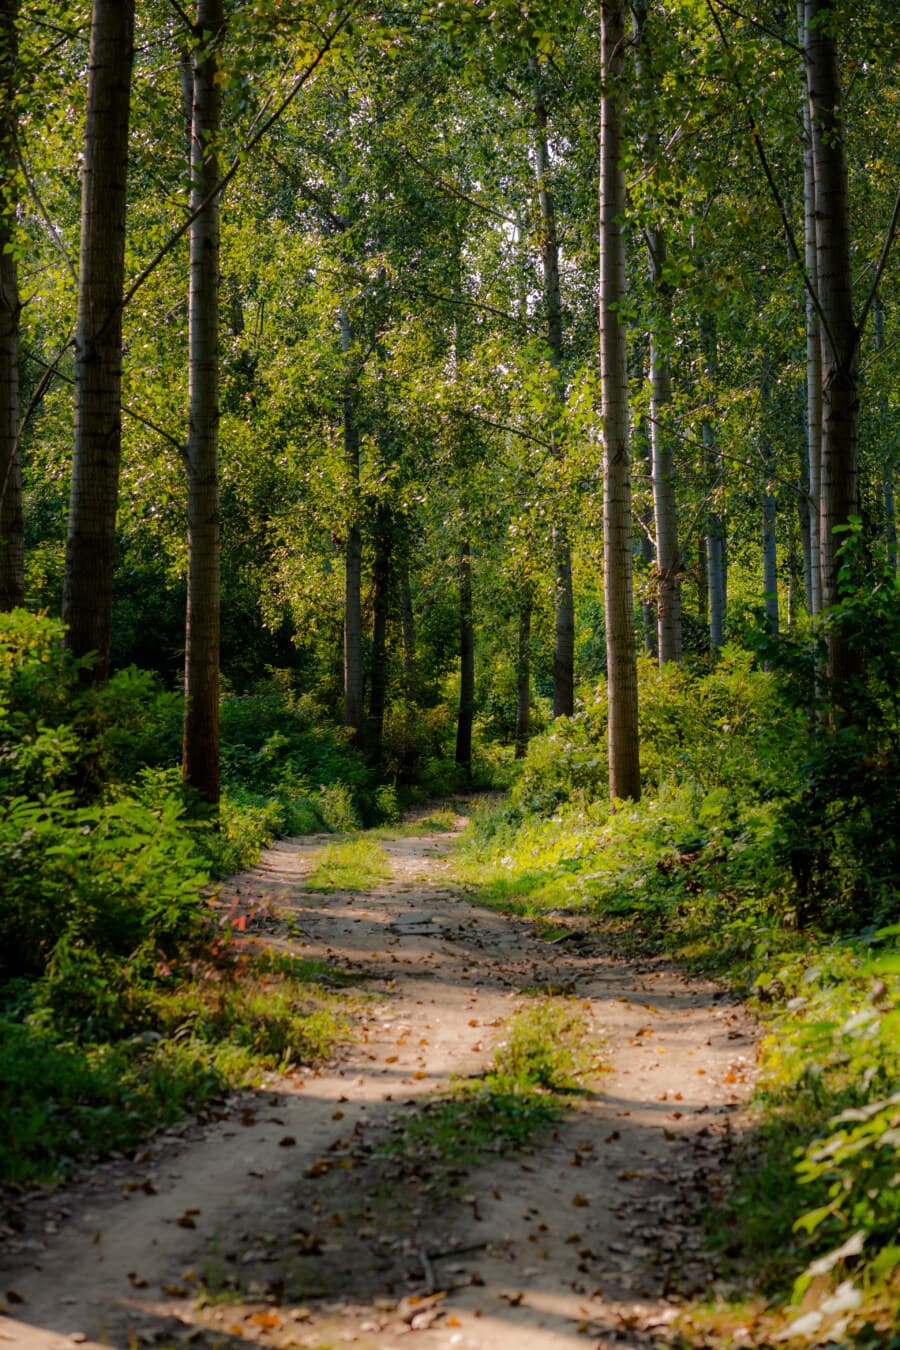 camino forestal, pista forestal, tiempo de primavera, bosque, álamo, sendero, bosque, paisaje, árbol, madera